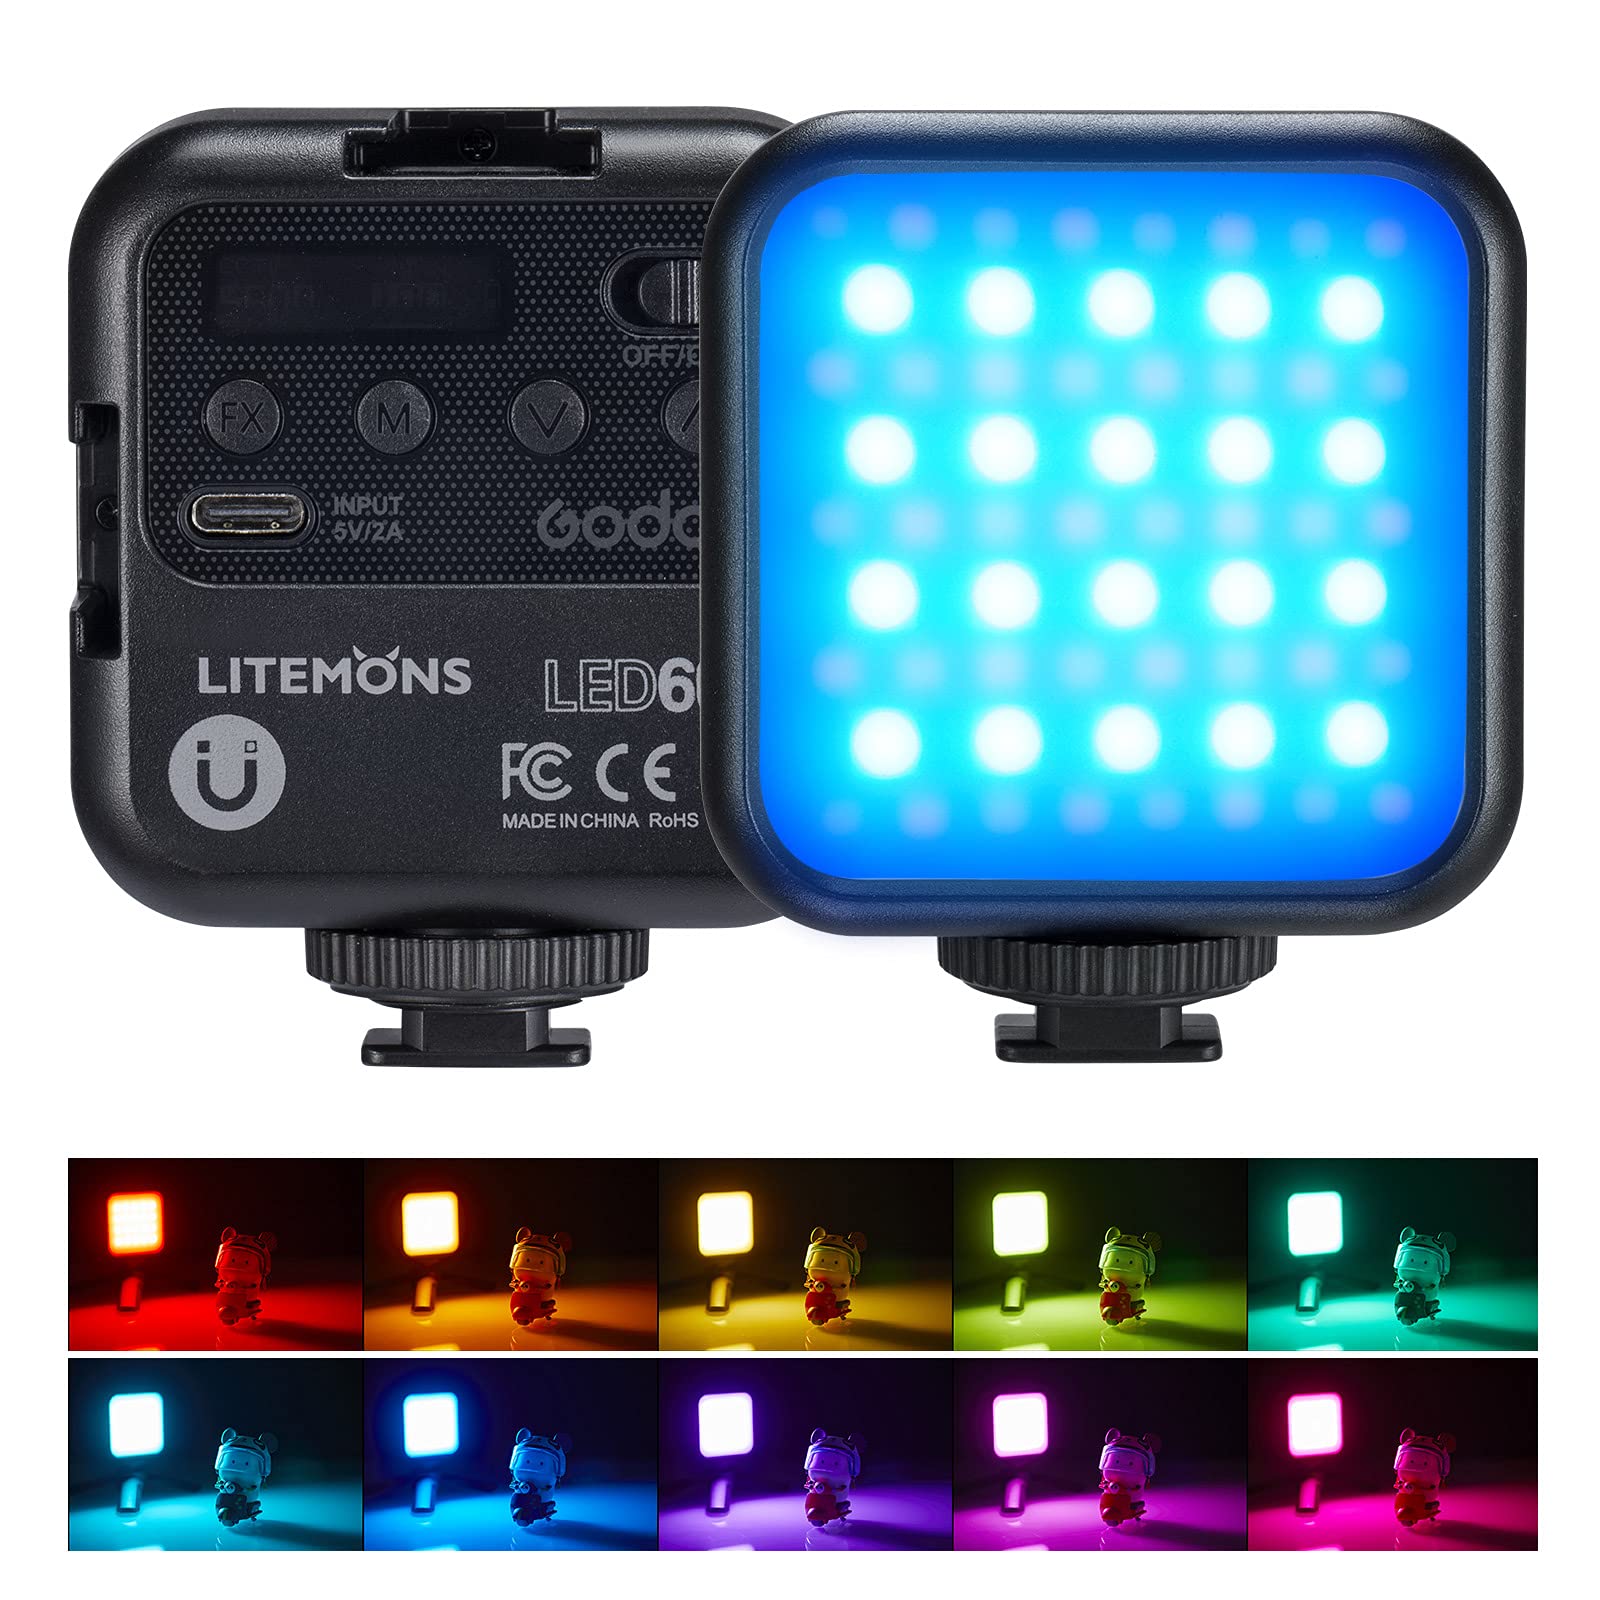 GODOX LITEMONS LED6R RGB LED-Videoleuchte, Taschenlicht Bicolor 3200K-6500K CRI 95, 13 FX Lichteffekte, HSI Modus, wiederaufladbar für Aufnahmen, Live Streaming, Mikrofilm